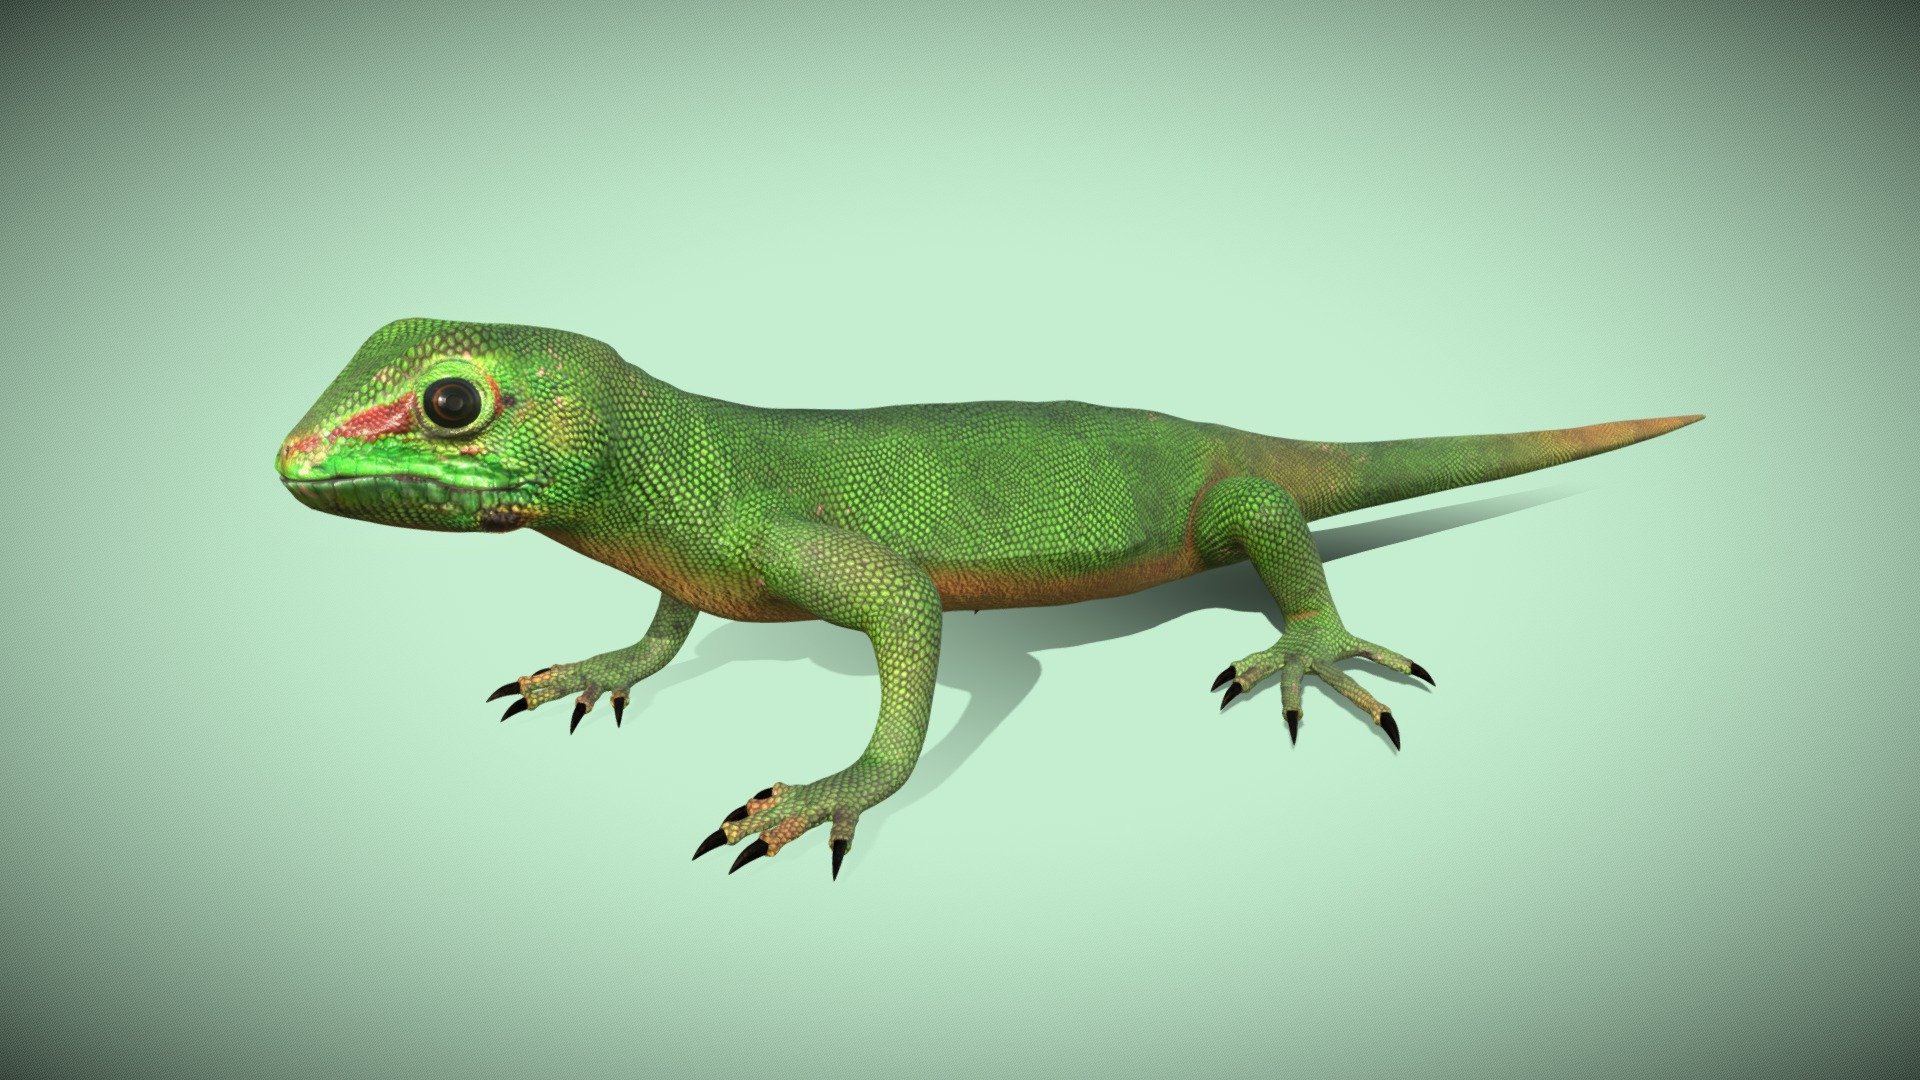 Garden Lizard - Buy Royalty Free 3D model by WinsonK [55c0c81 ...